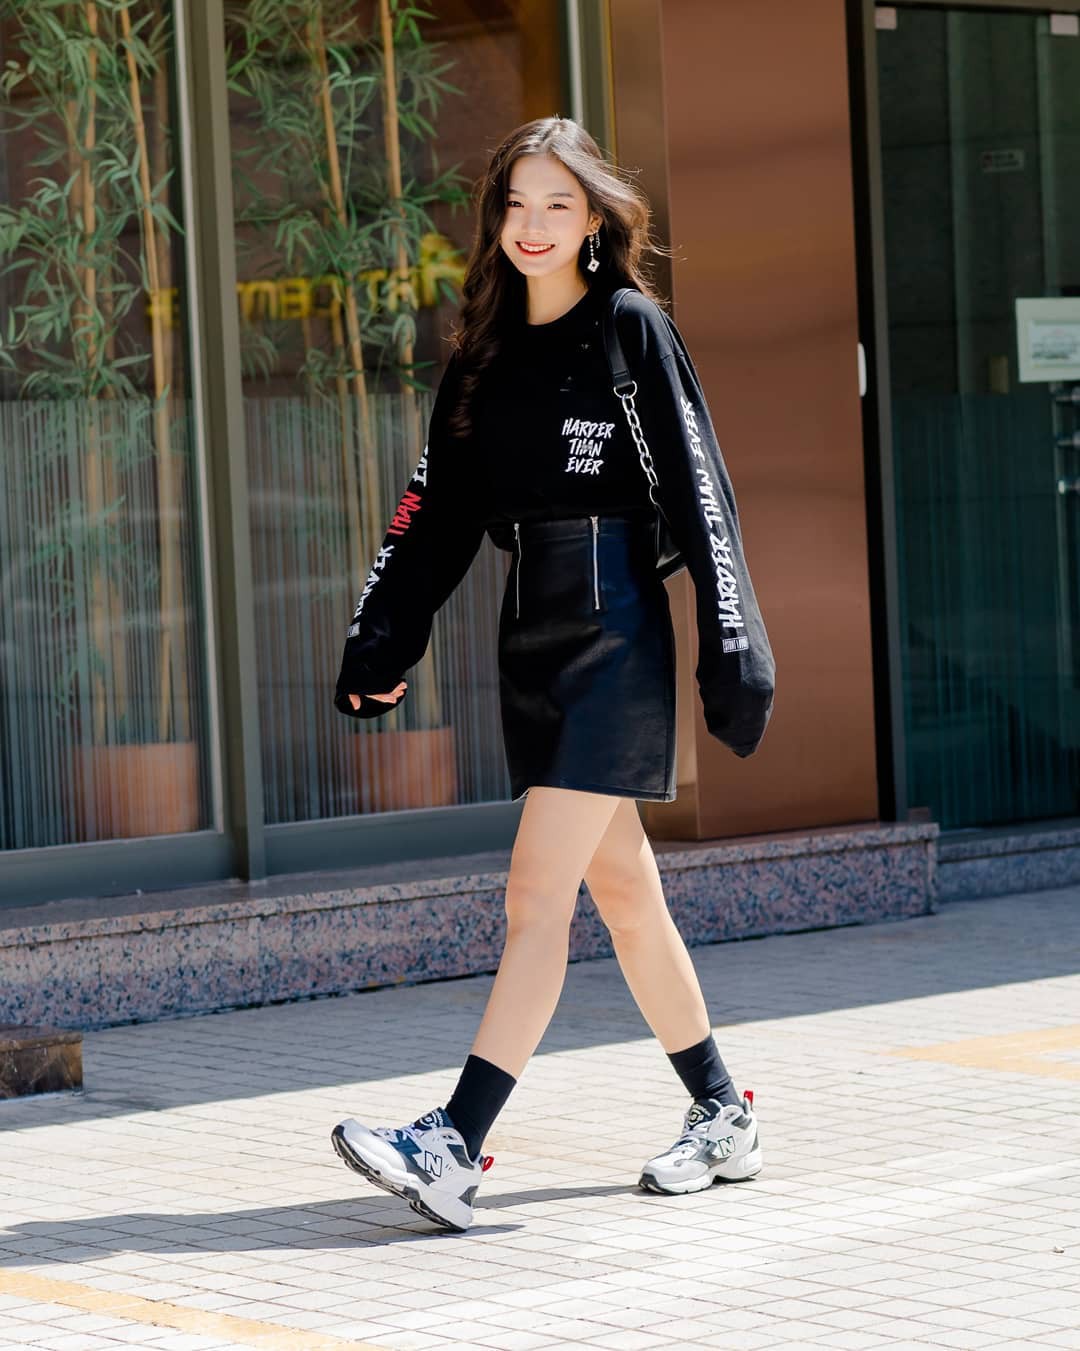 Street style con gái Hàn là một chủ đề hot và thú vị được truyền tay nhau trong giới trẻ hiện nay. Hãy đến với hình ảnh này để khám phá phong cách đường phố của các cô gái xinh đẹp và tự tin từ xứ sở kim chi.